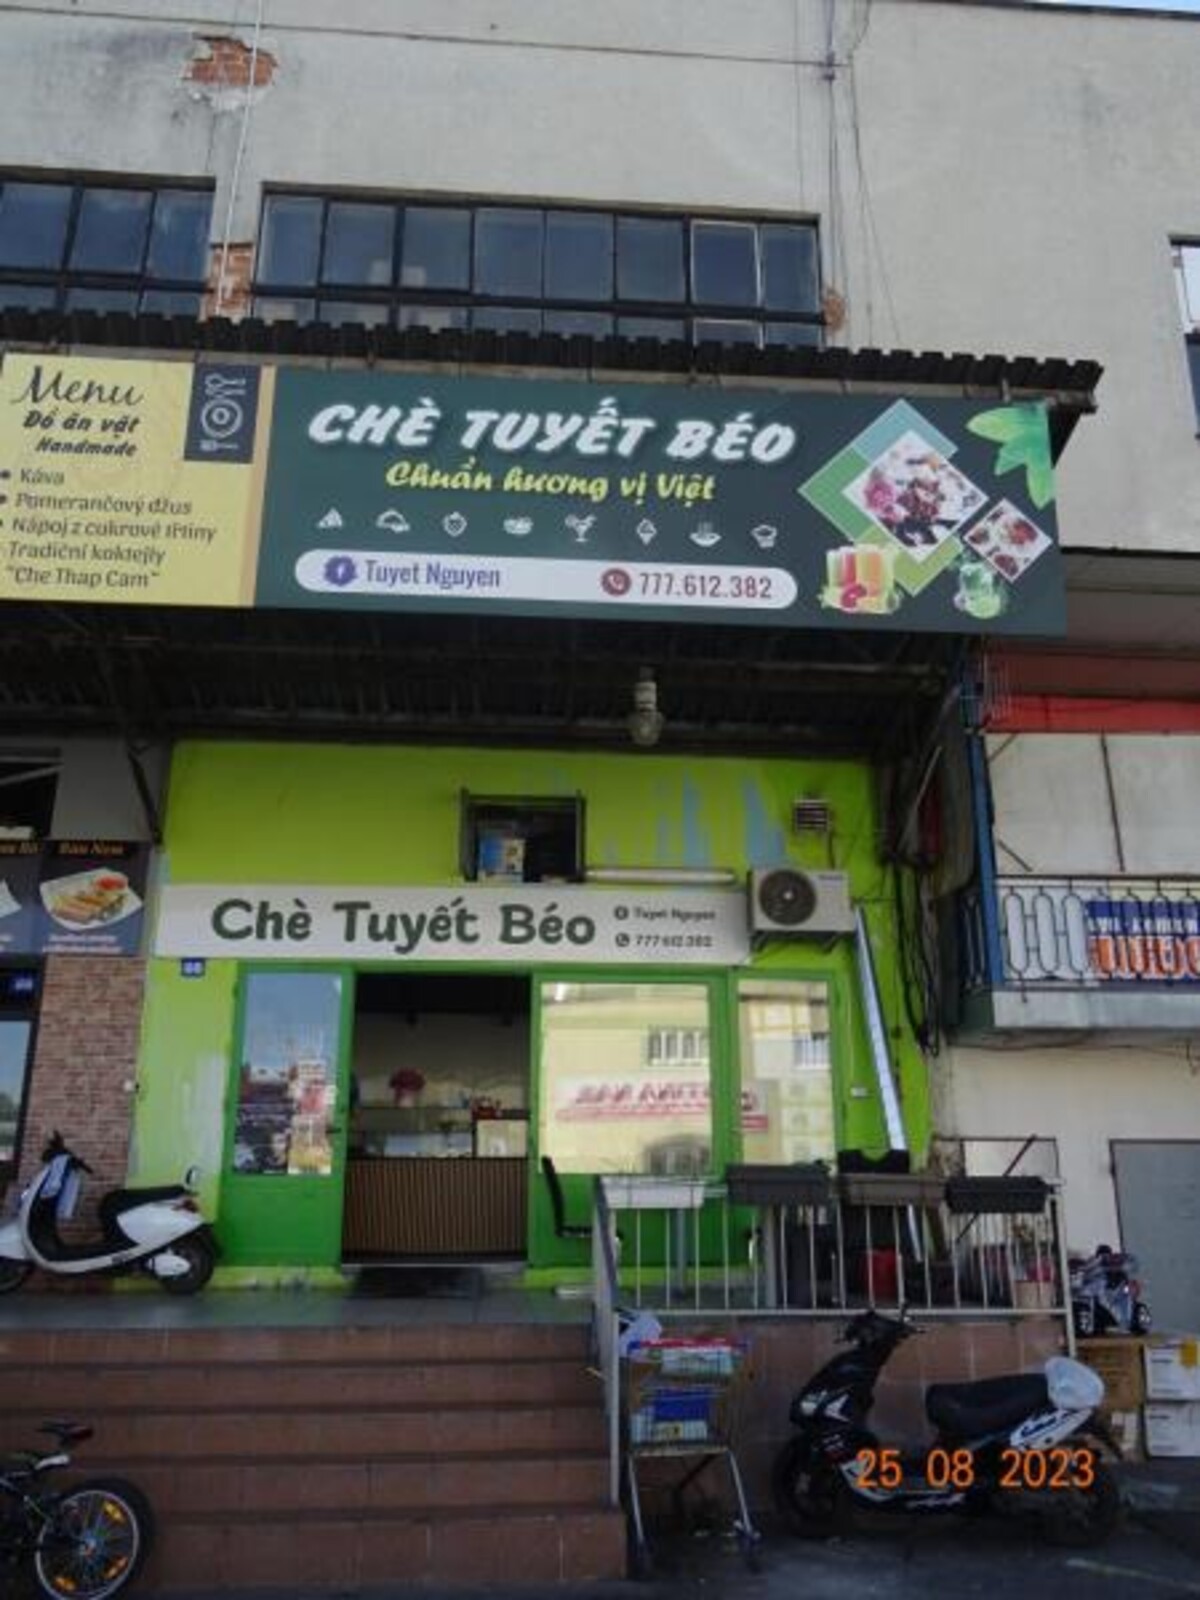 Uzavřená provozovna Che Tuyet Beo.